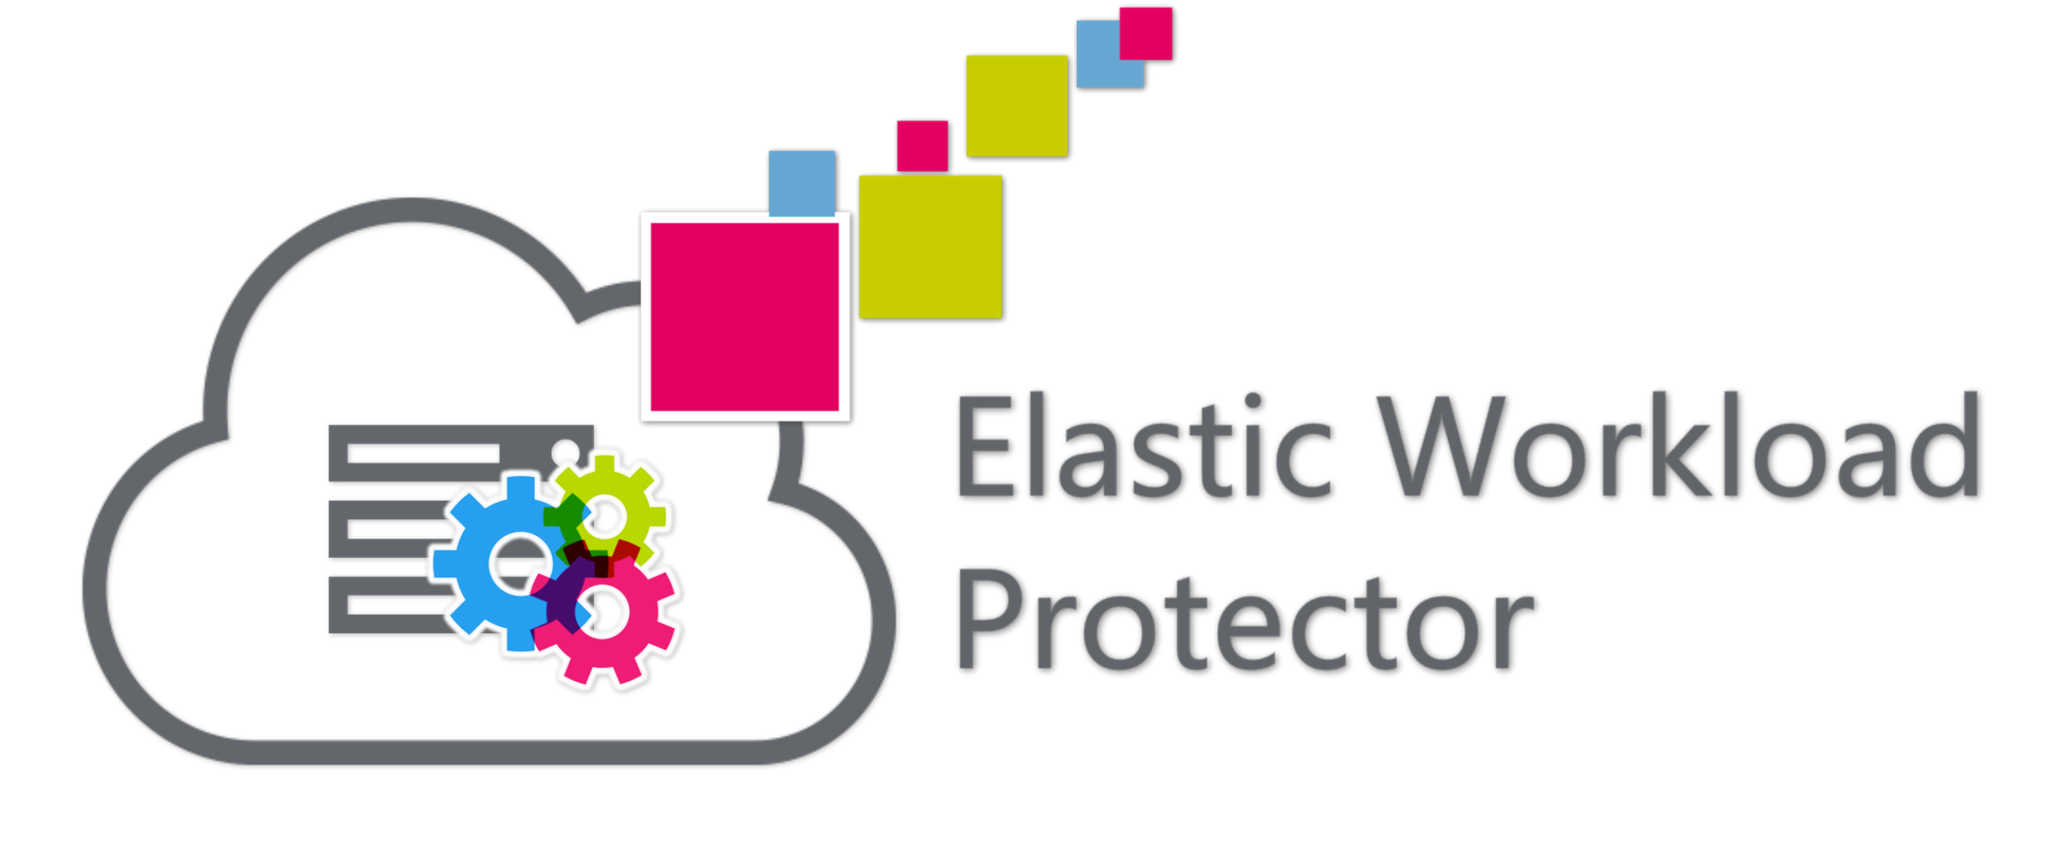 Avis Elastic Workload Protector : La sécurité continue des infrastructures Cloud et hybrides - Appvizer